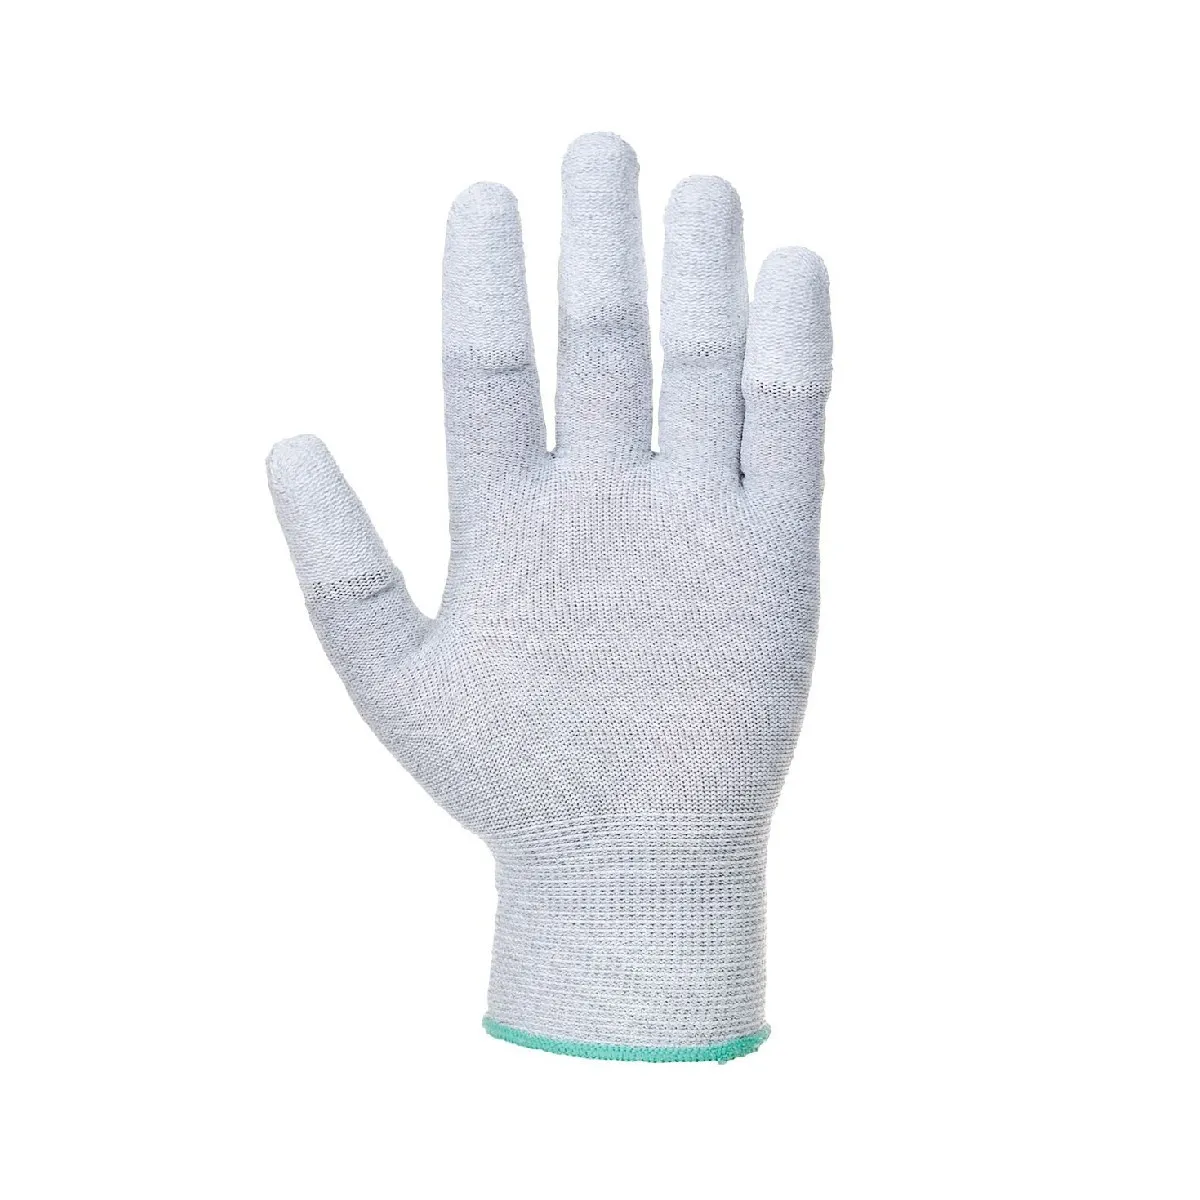 Zaštitne rukavice A198 sivo-bele - Portwest - PAR 